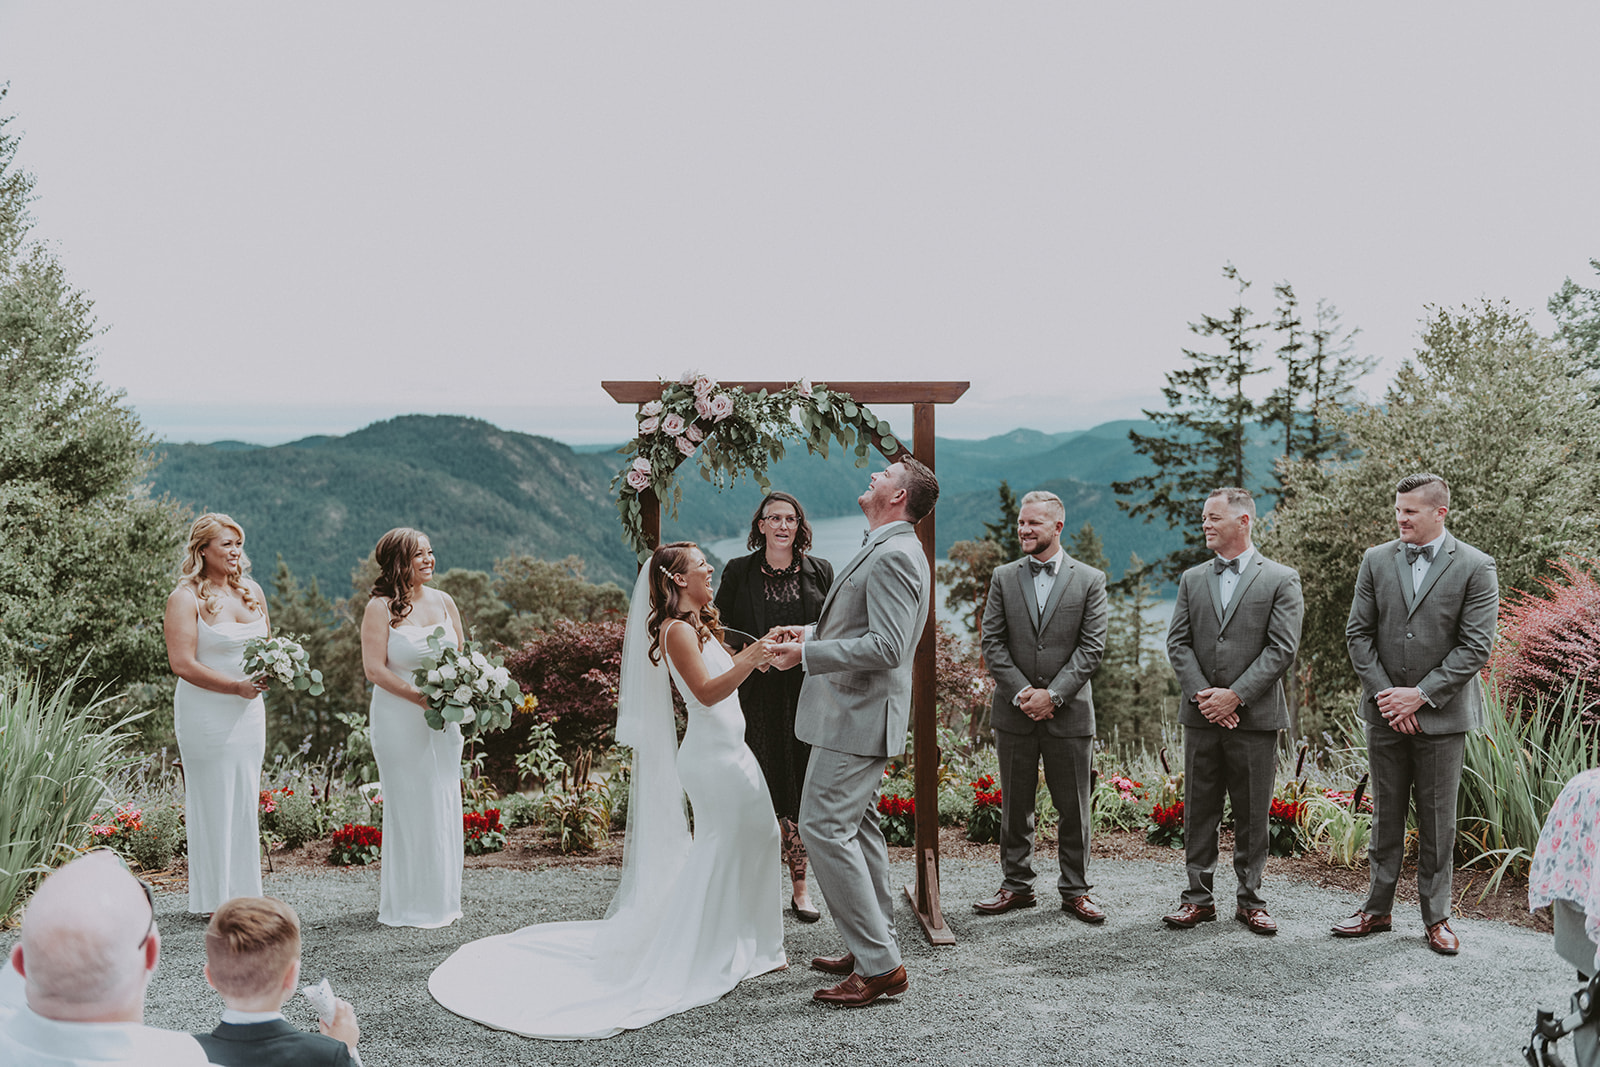 Vancouver Island wedding photographer